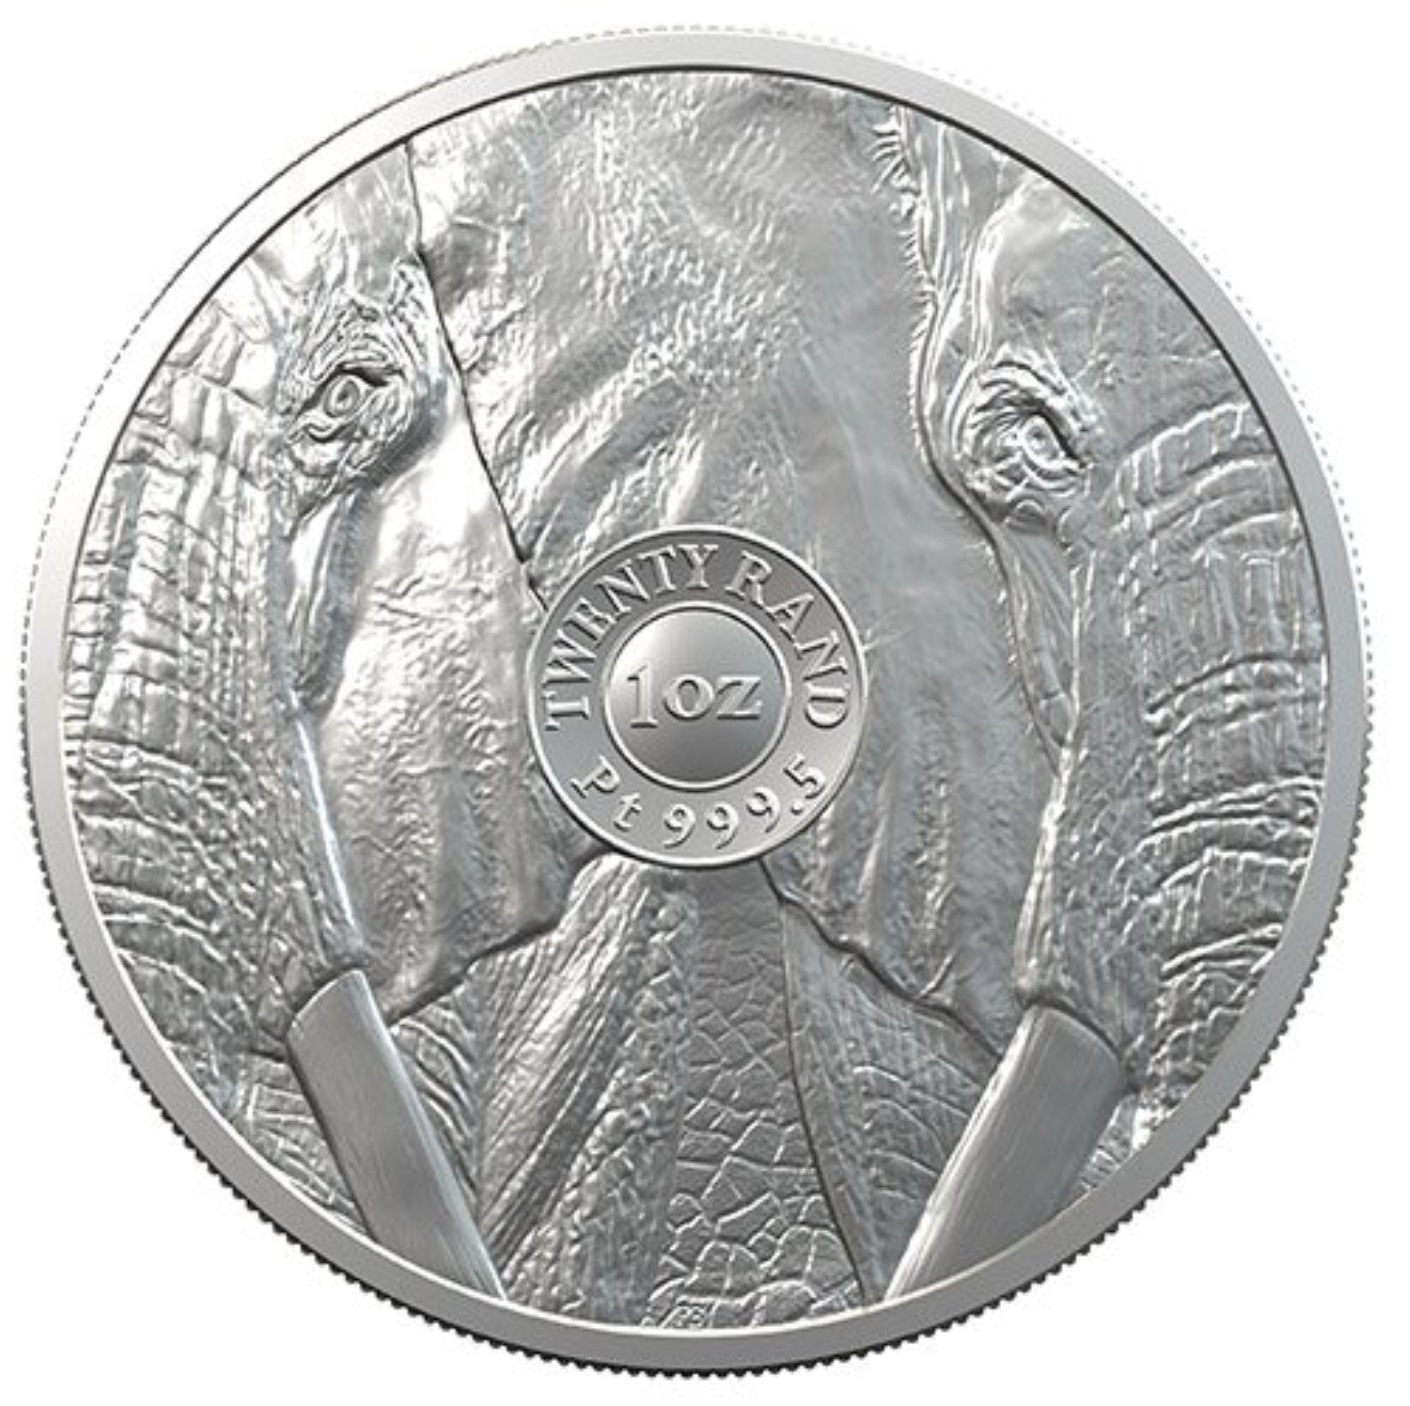 New Platinum Coin - The Big 5 Platinum Bullion Coin